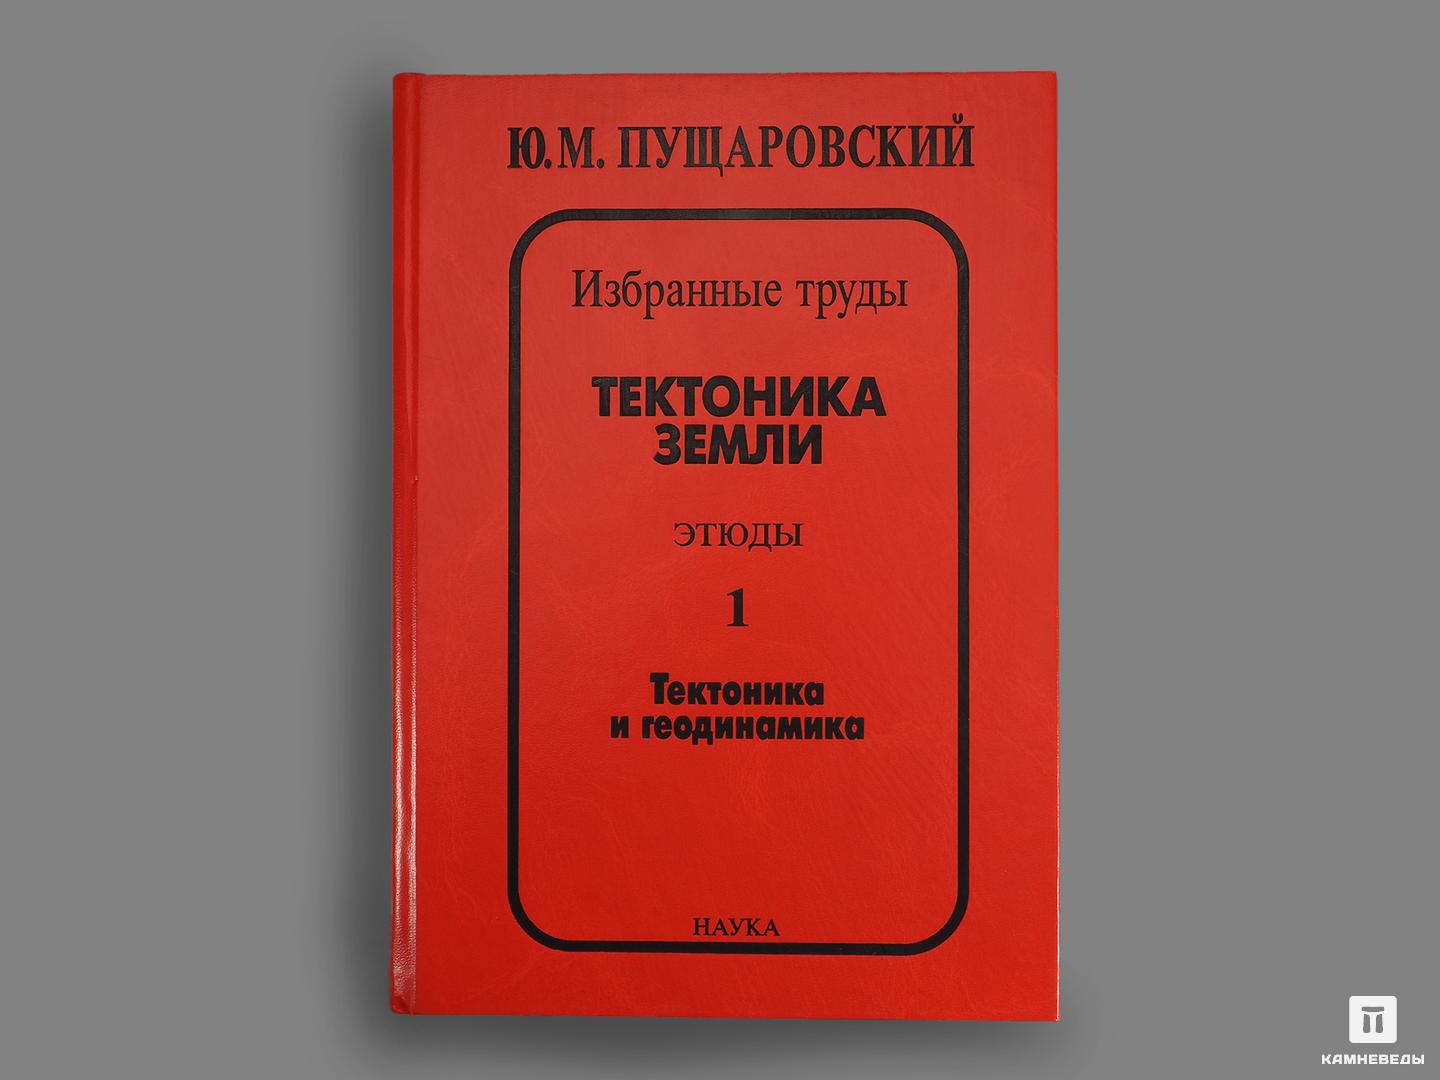 Книга: Ю. М. Пущаровский «Тектоника Земли. Этюды.» 1 и 2 том наука логики